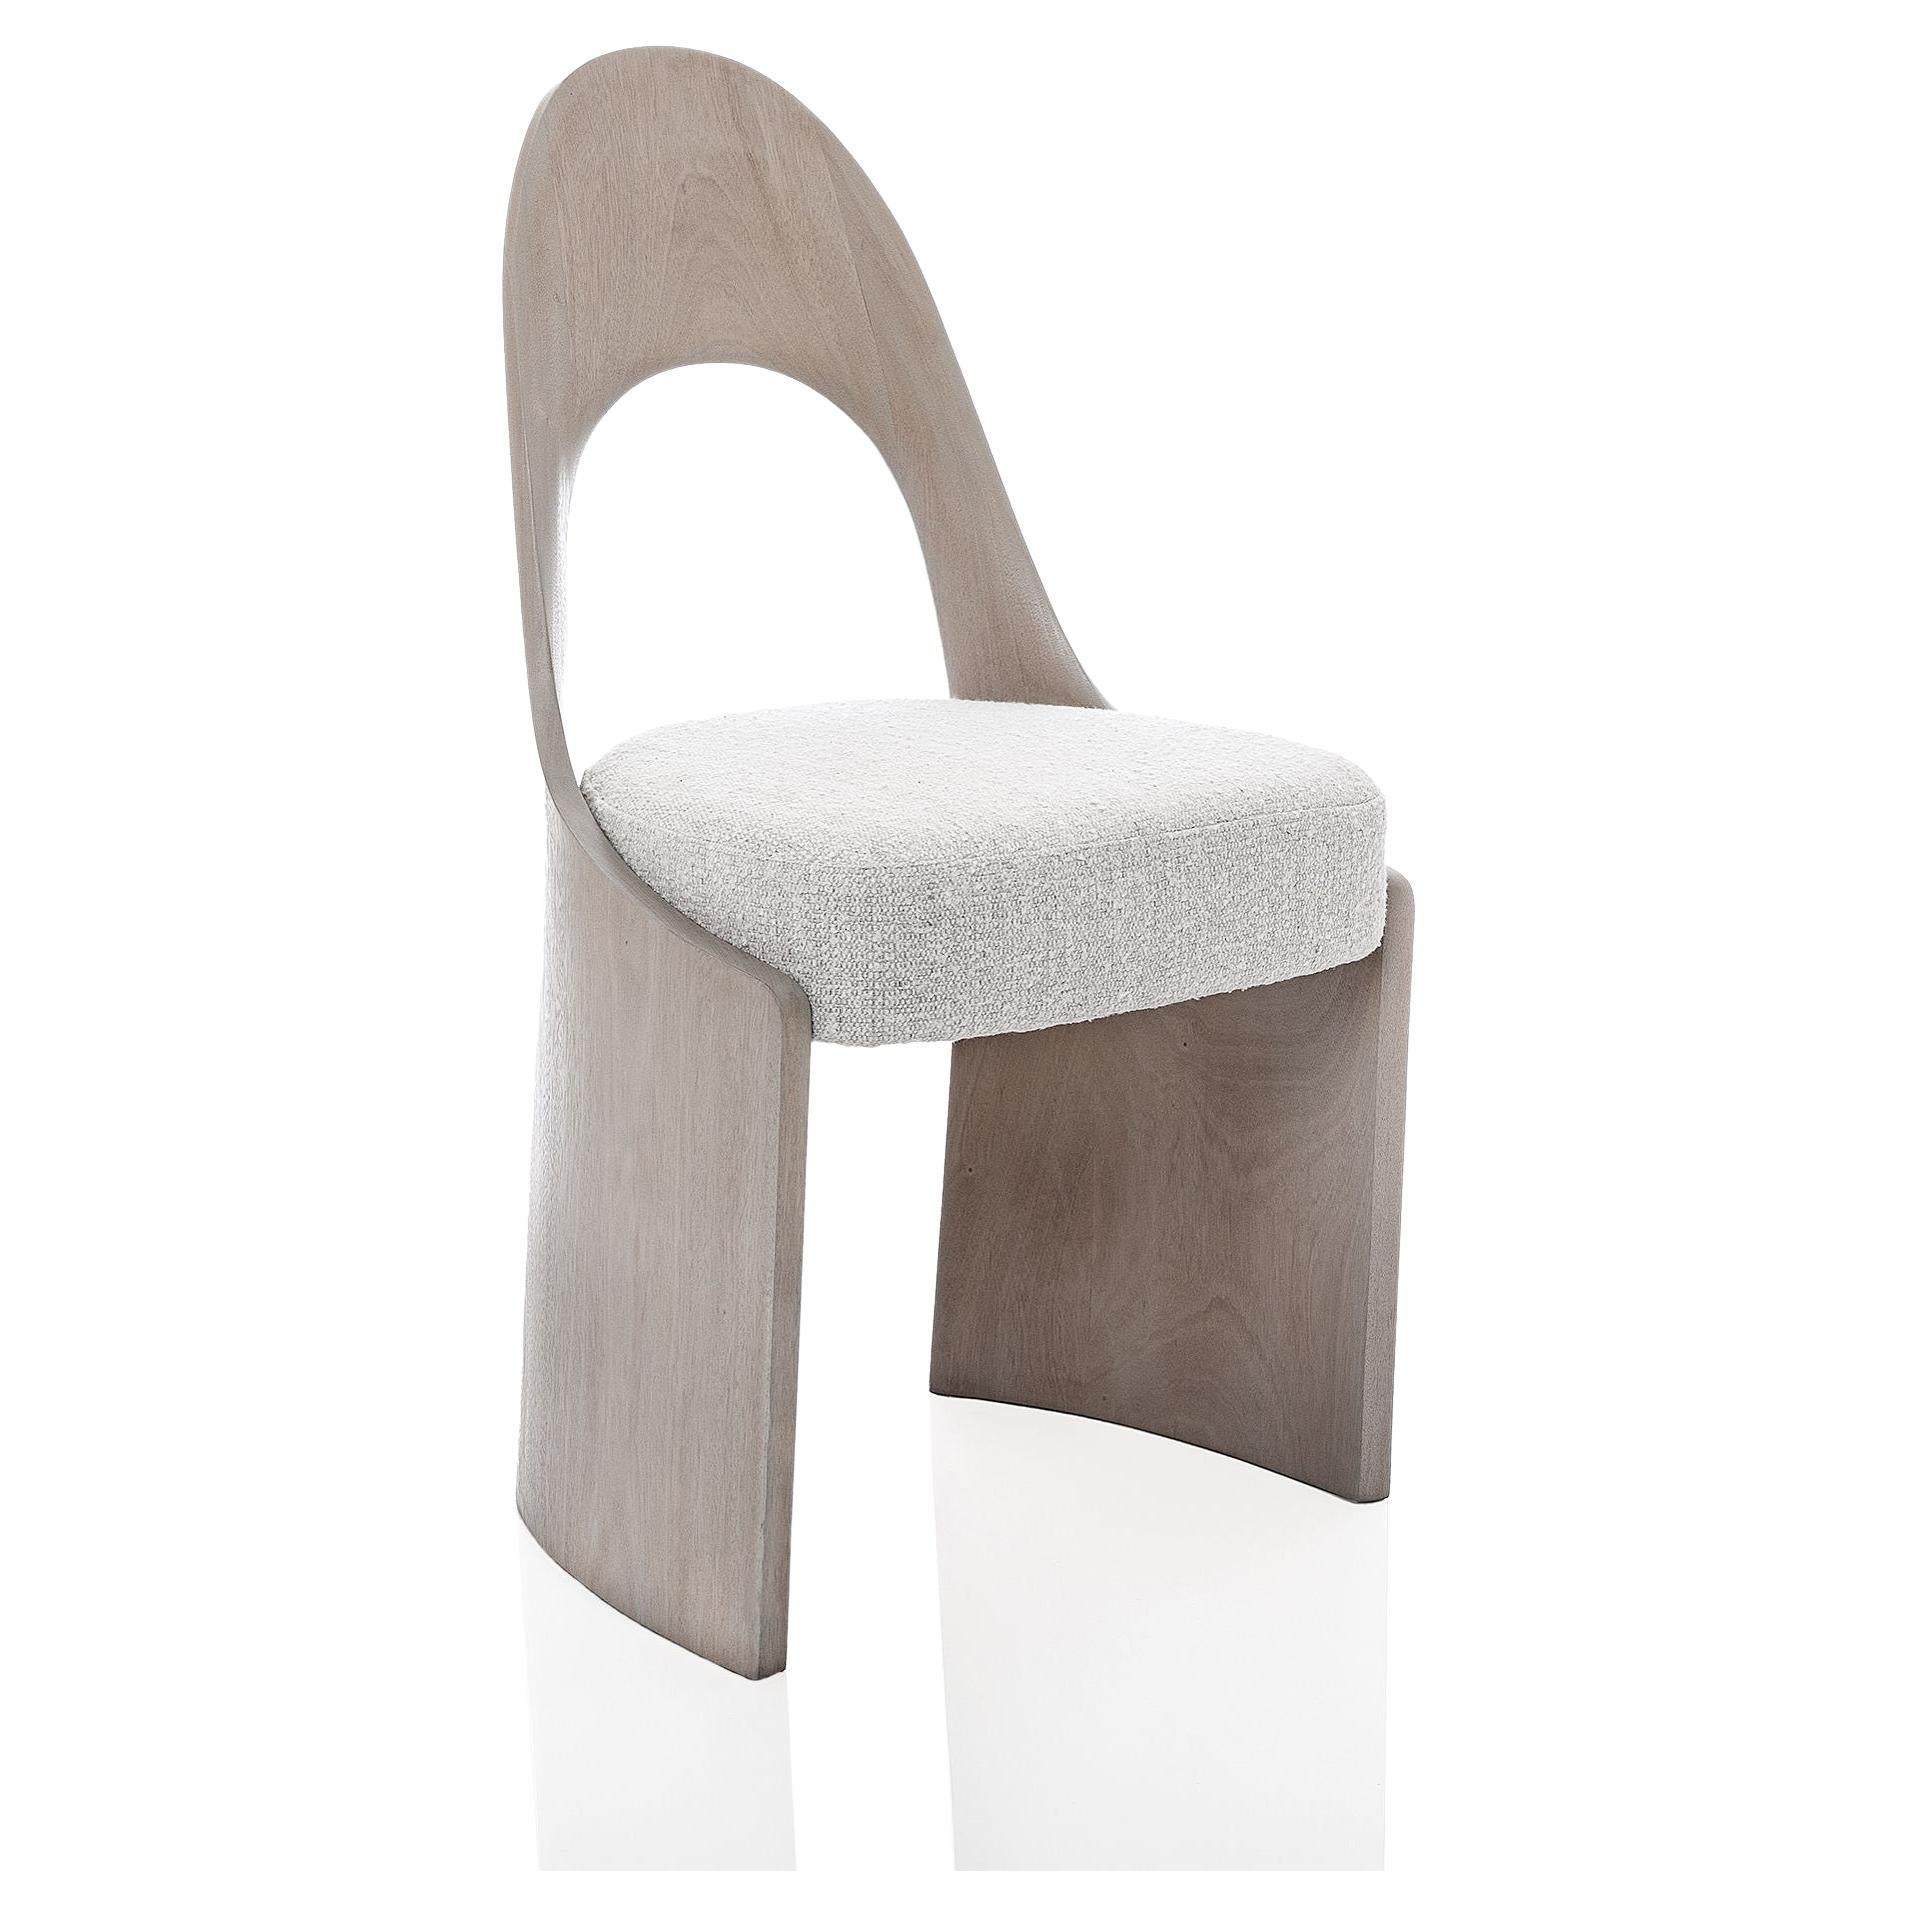 Thomas Newman Studio, "Gaia Chair", Dining Chair For Sale